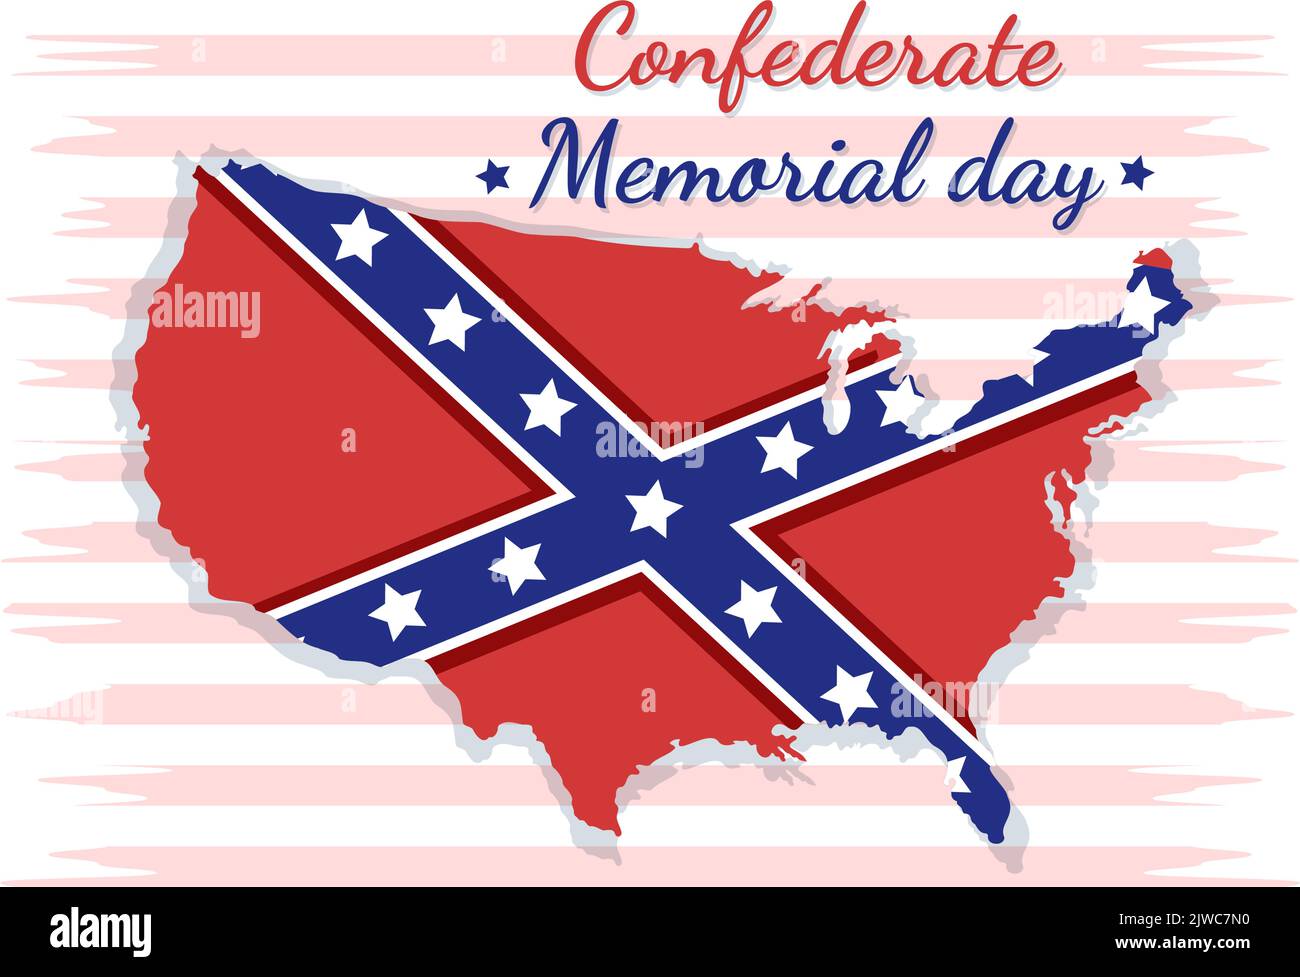 Konföderierte Memorial Day Vorlage Handgezeichnete Cartoon flache Illustration für Gedenken Soldaten der USA mit Flag Design Stock Vektor